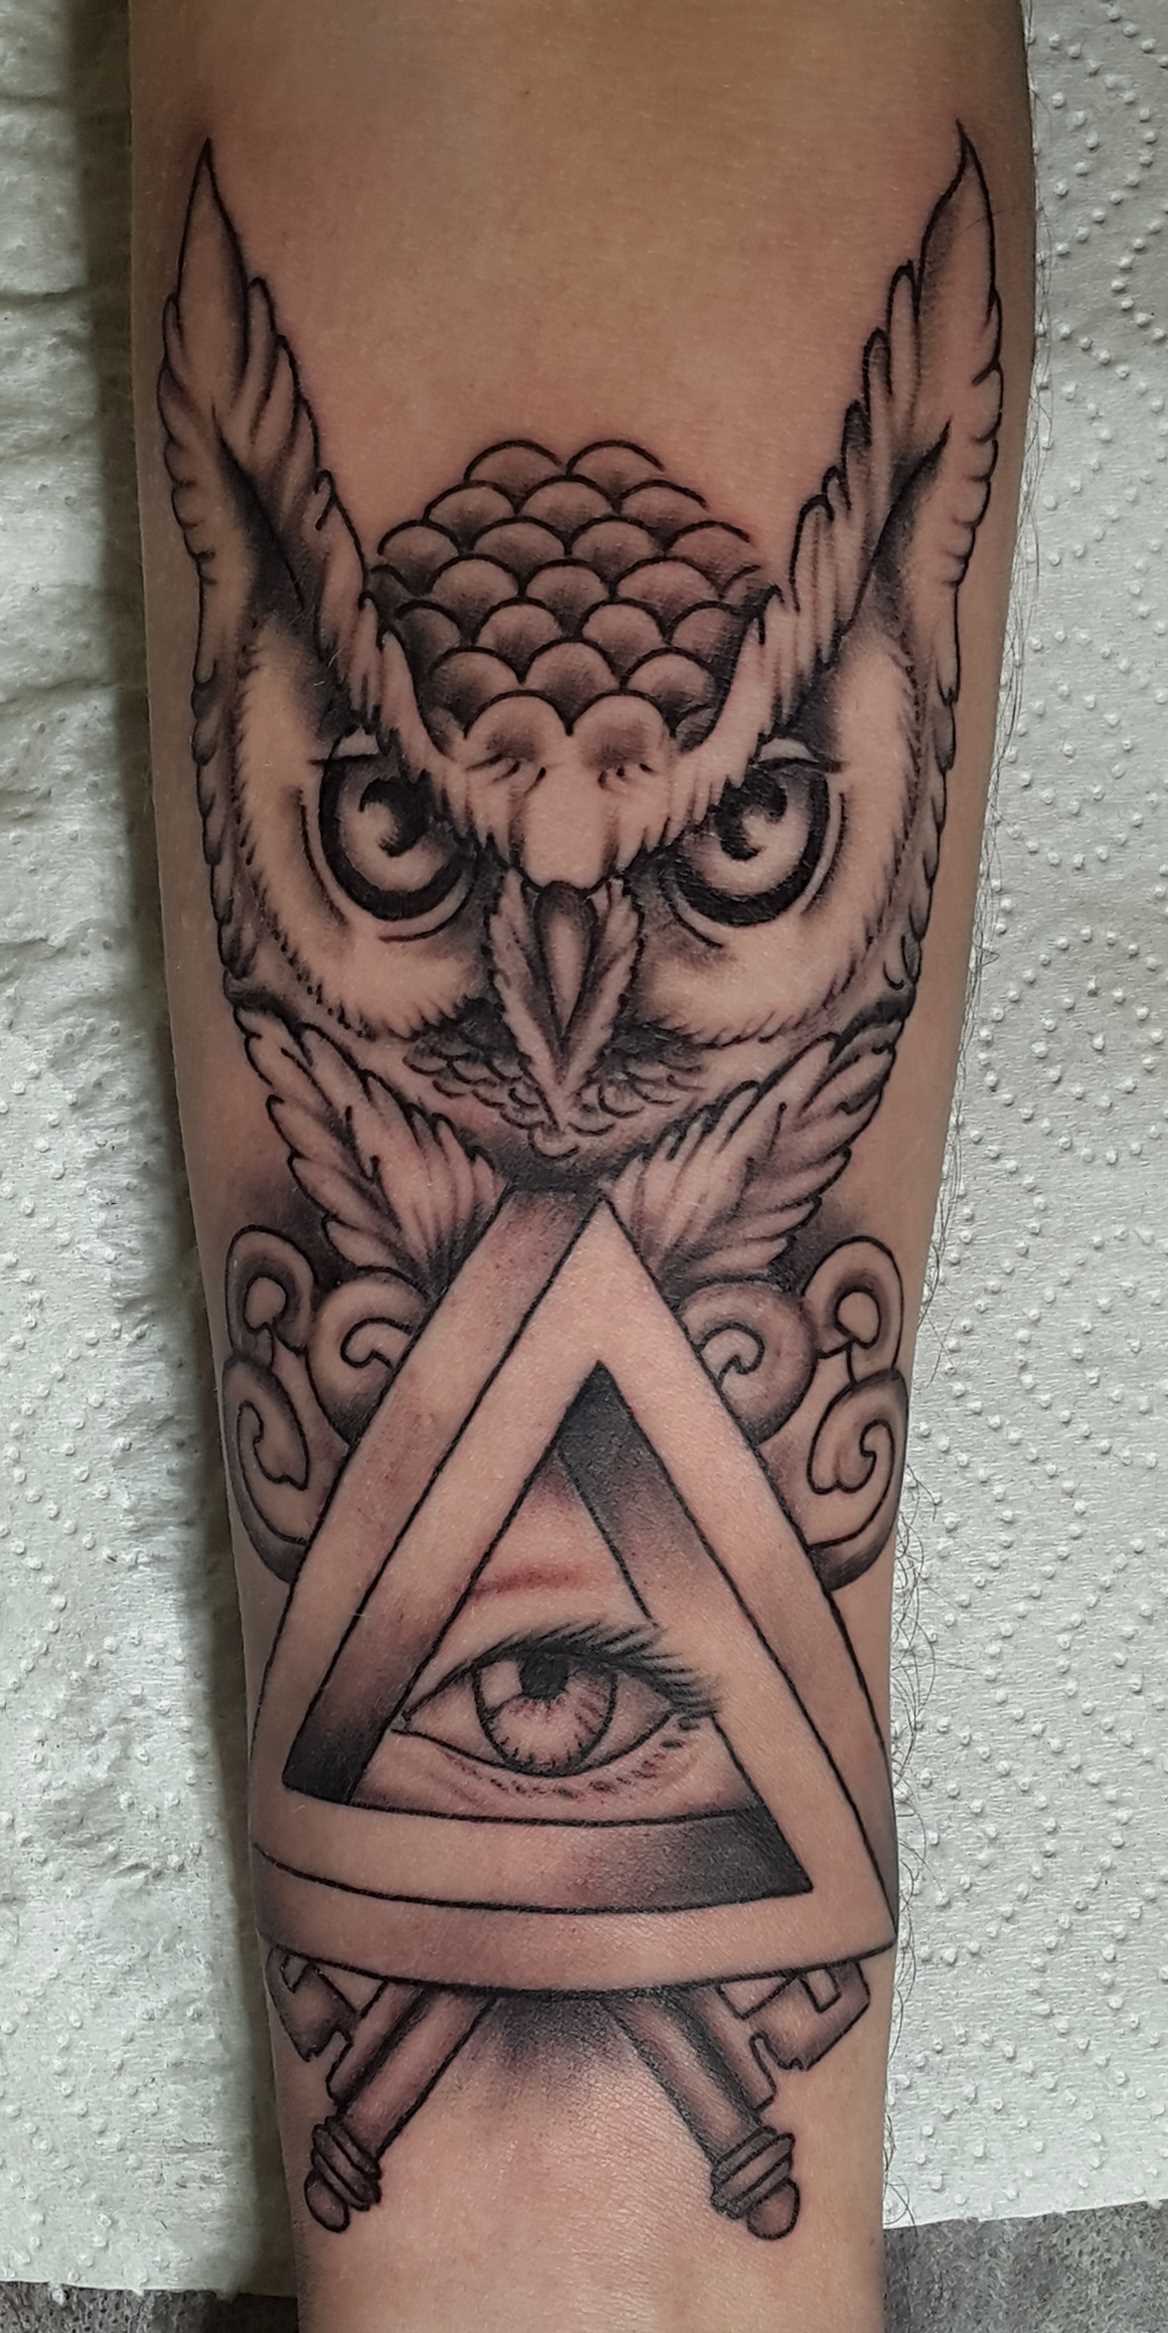 Tatuagem no antebraço da menina - a coruja e o olho no triângulo,